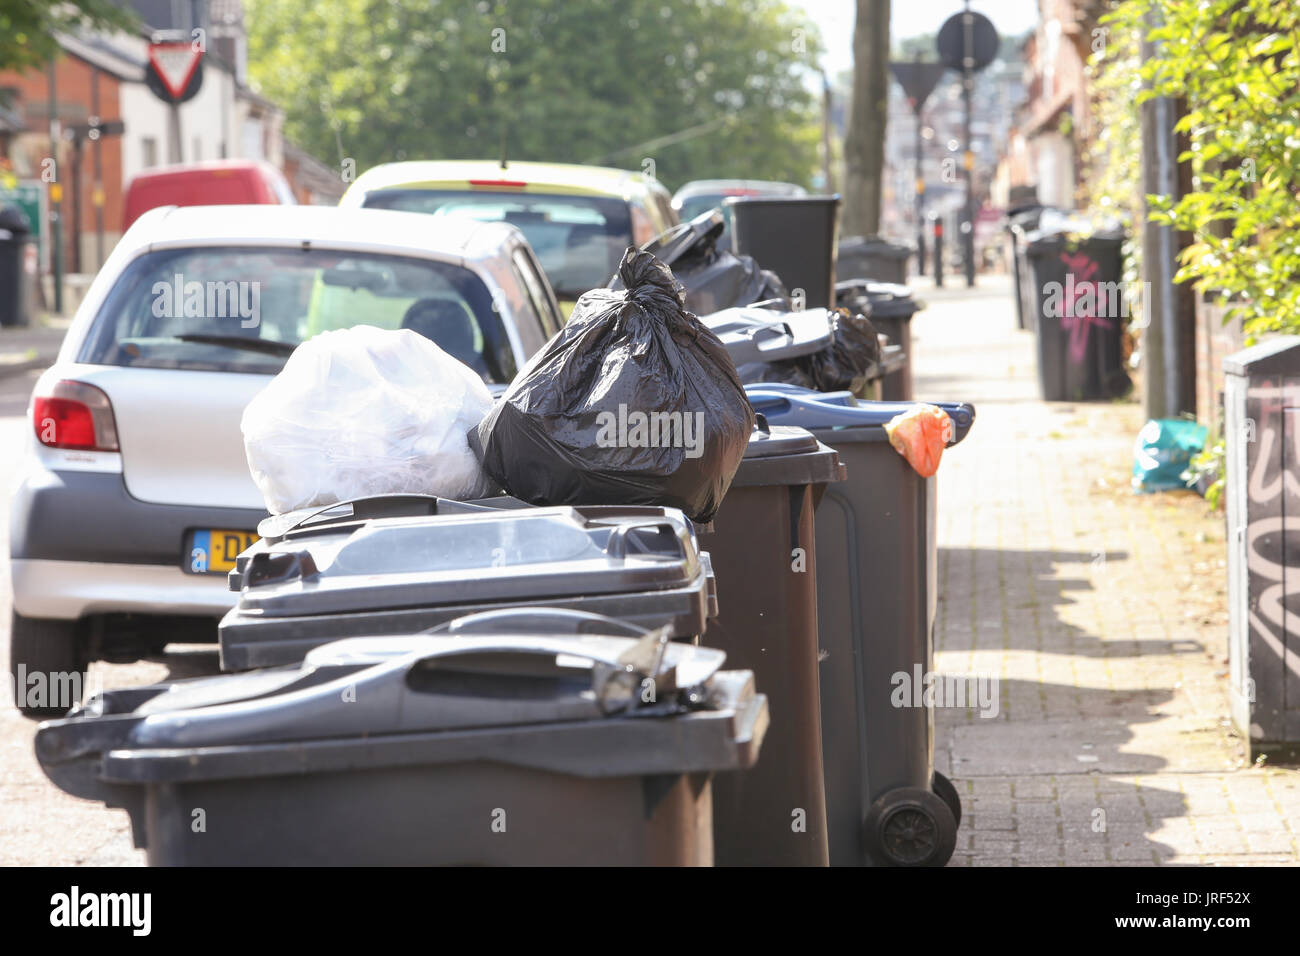 Rechazar la basura se acumula basura como Consejo de Birmingham recolectores de basura ir a la huelga. UK Agosto 2017 Foto de stock